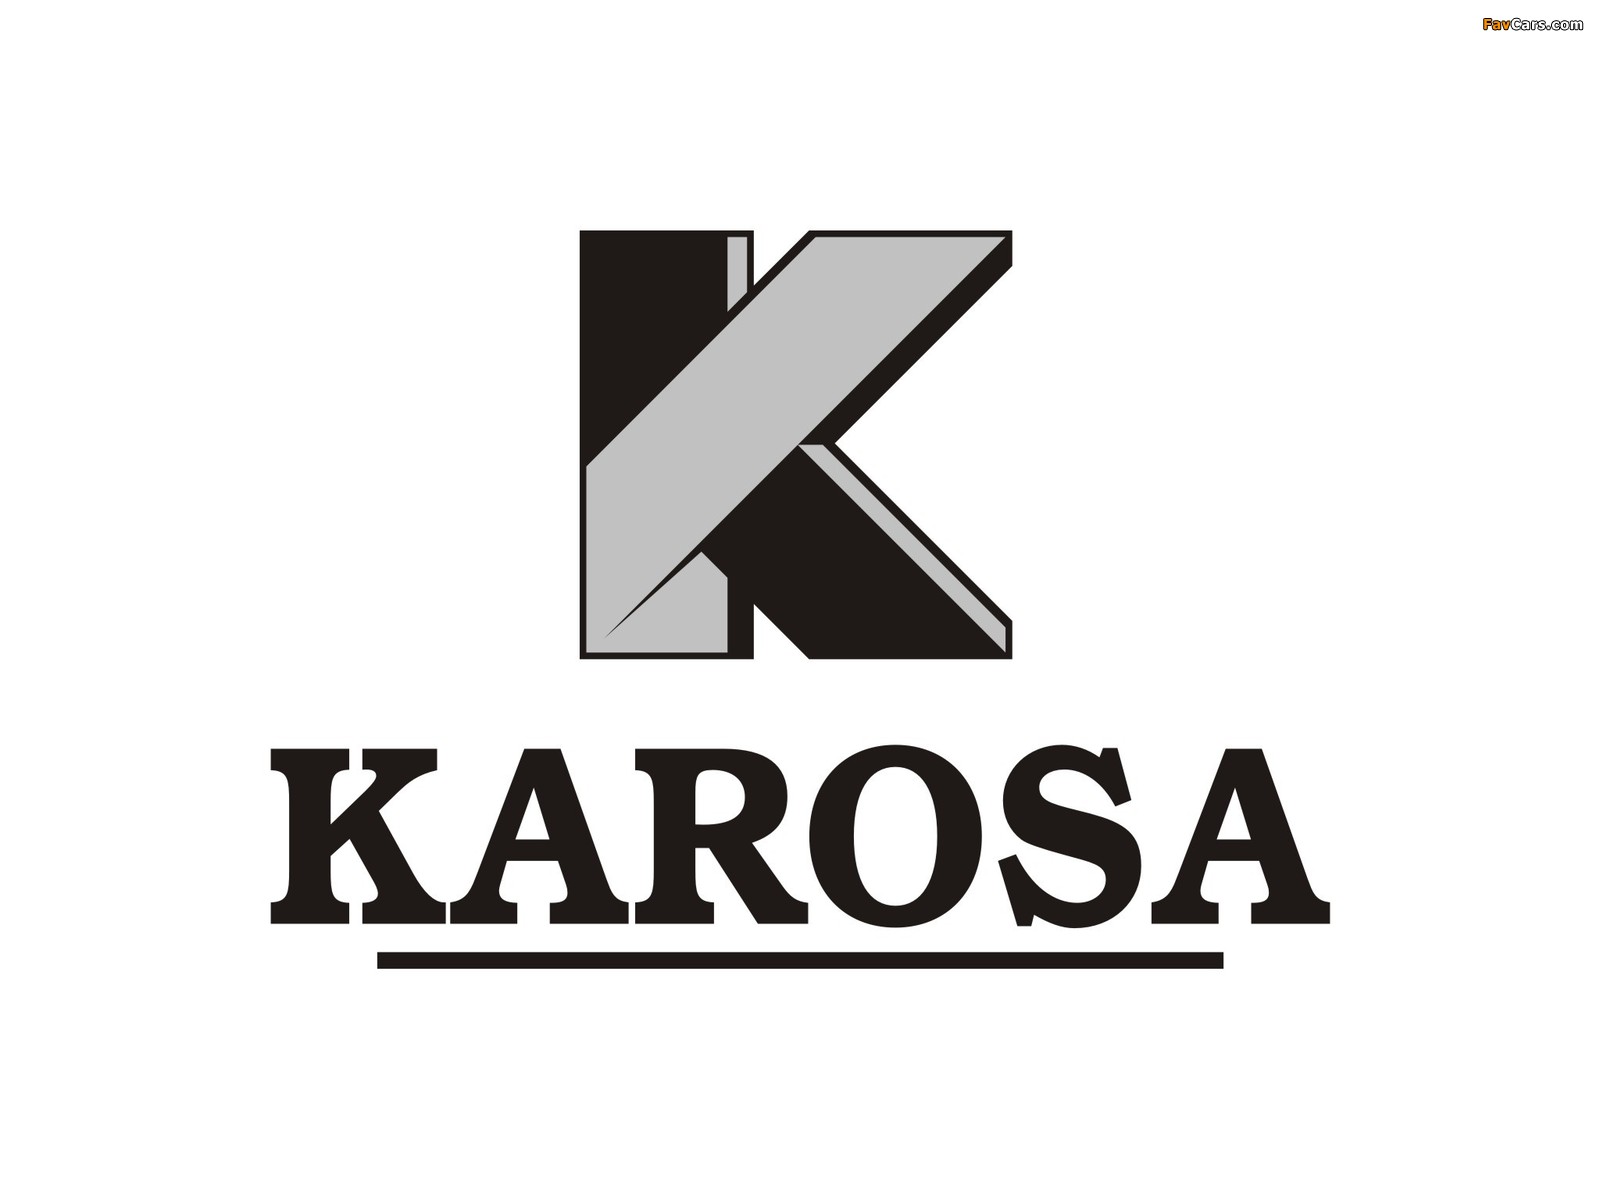 Karosa photos (1600 x 1200)